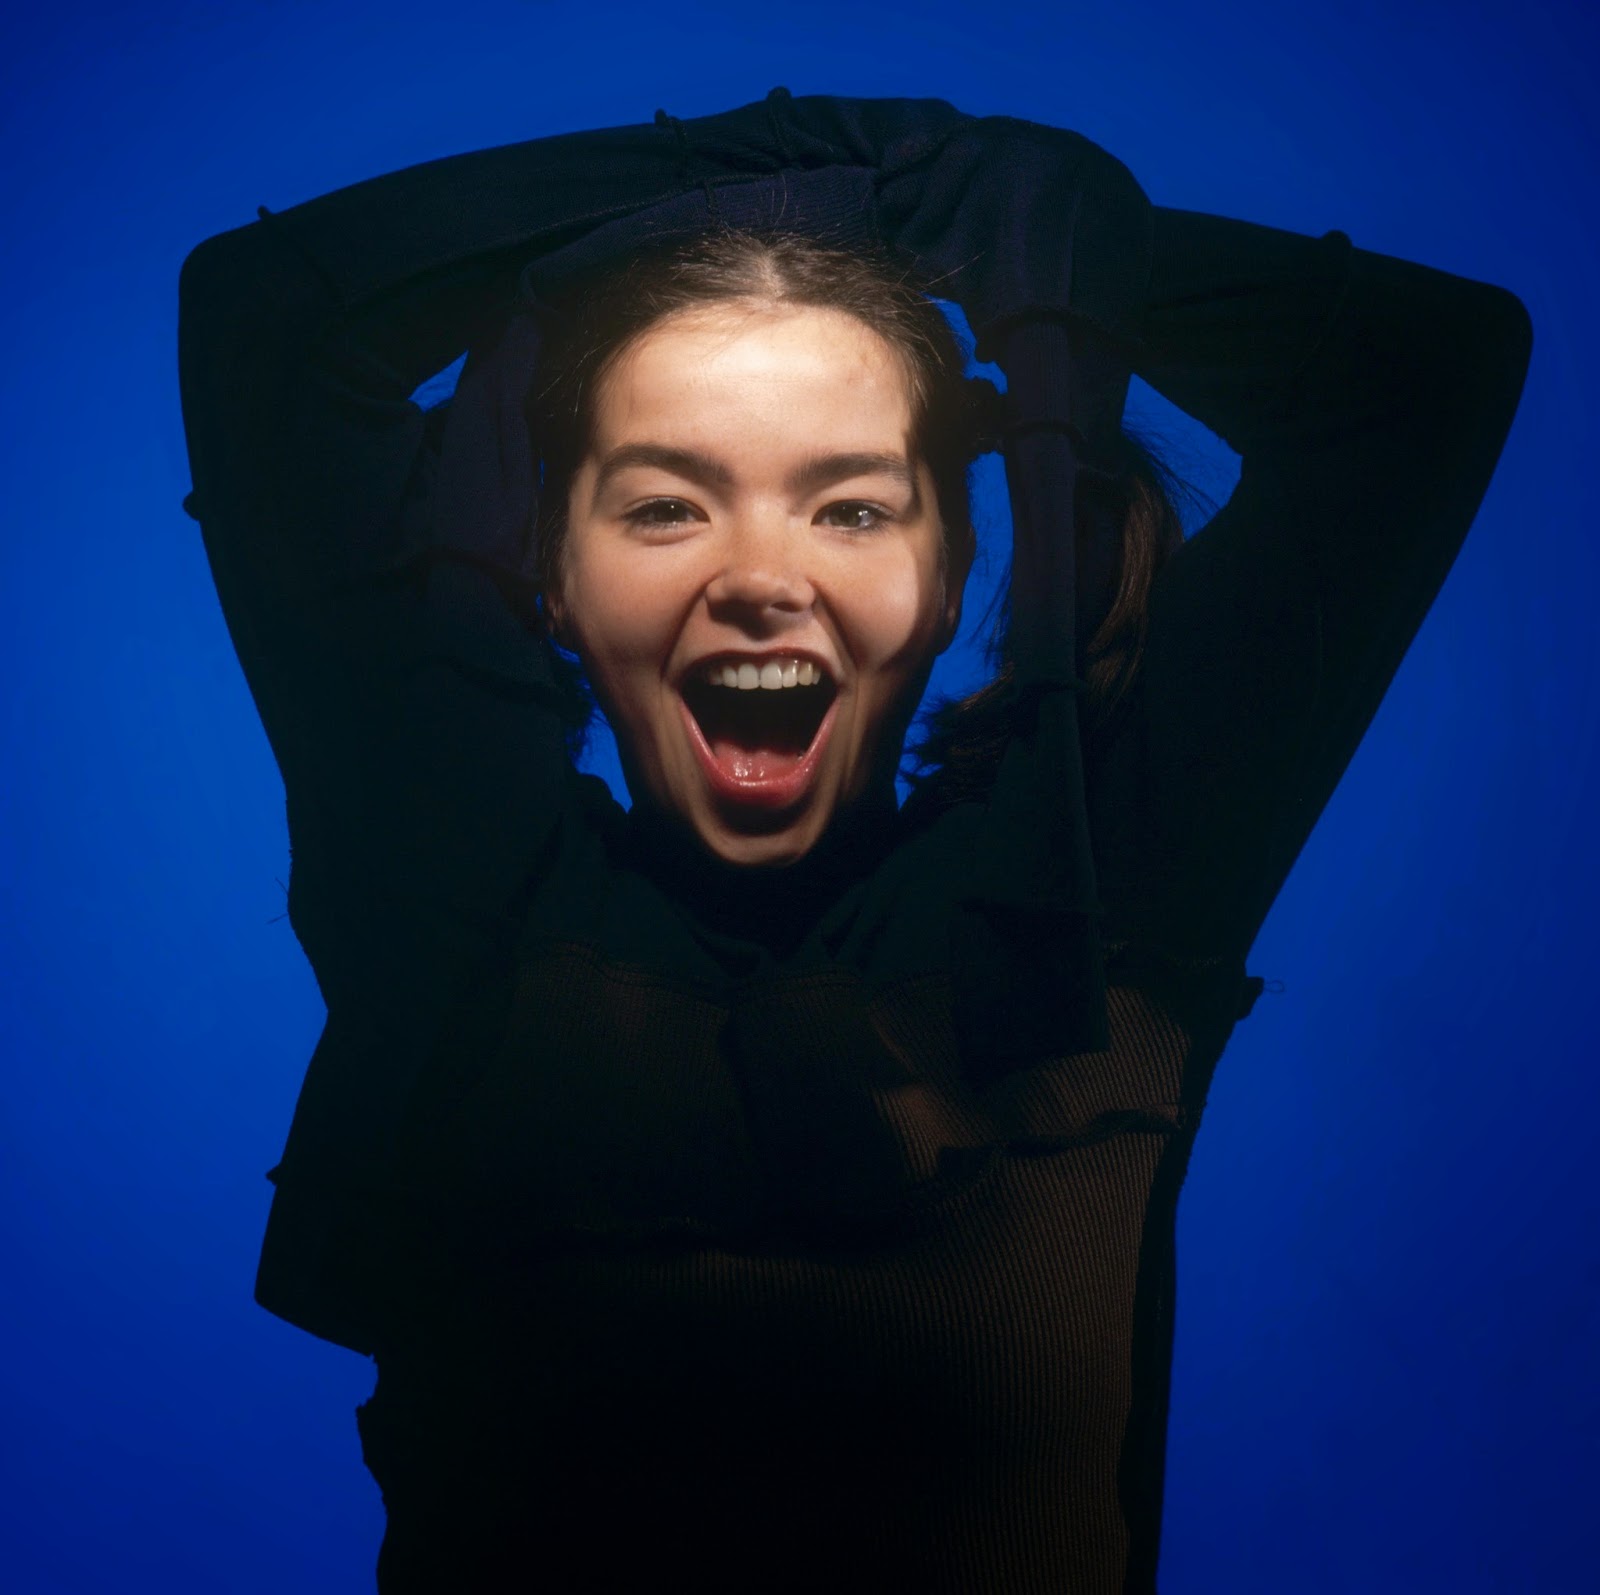 björk guðmundsdóttir: Björk - Live @ Paradiso, Amsterdam, Netherlands